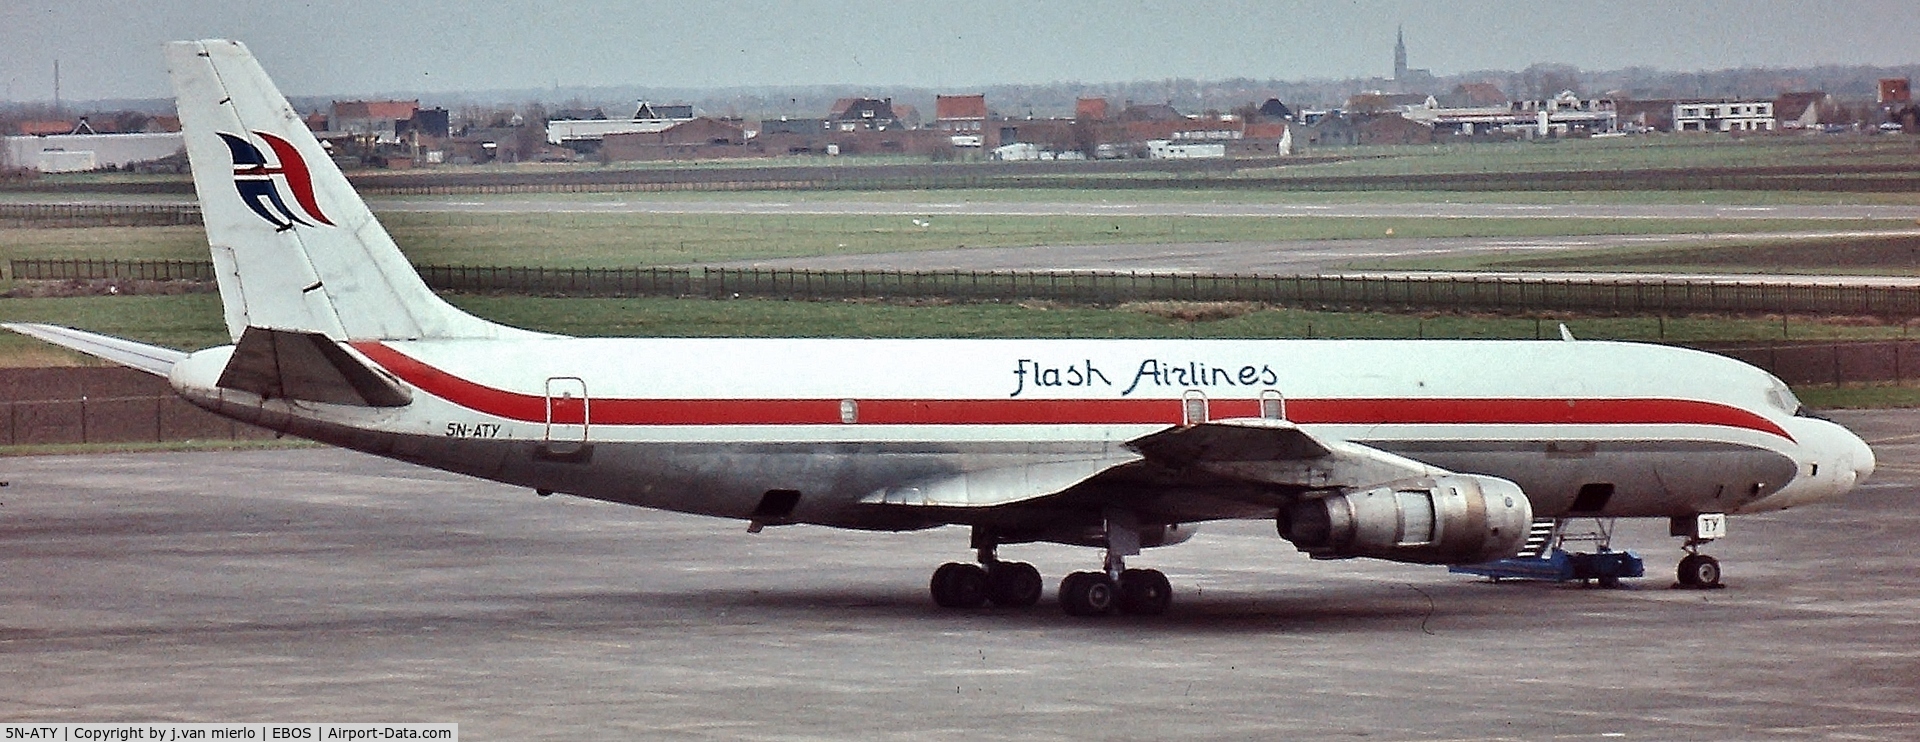 5N-ATY, 1966 Douglas DC-8-55(F) C/N 45858, Oostende, Belgium '90s